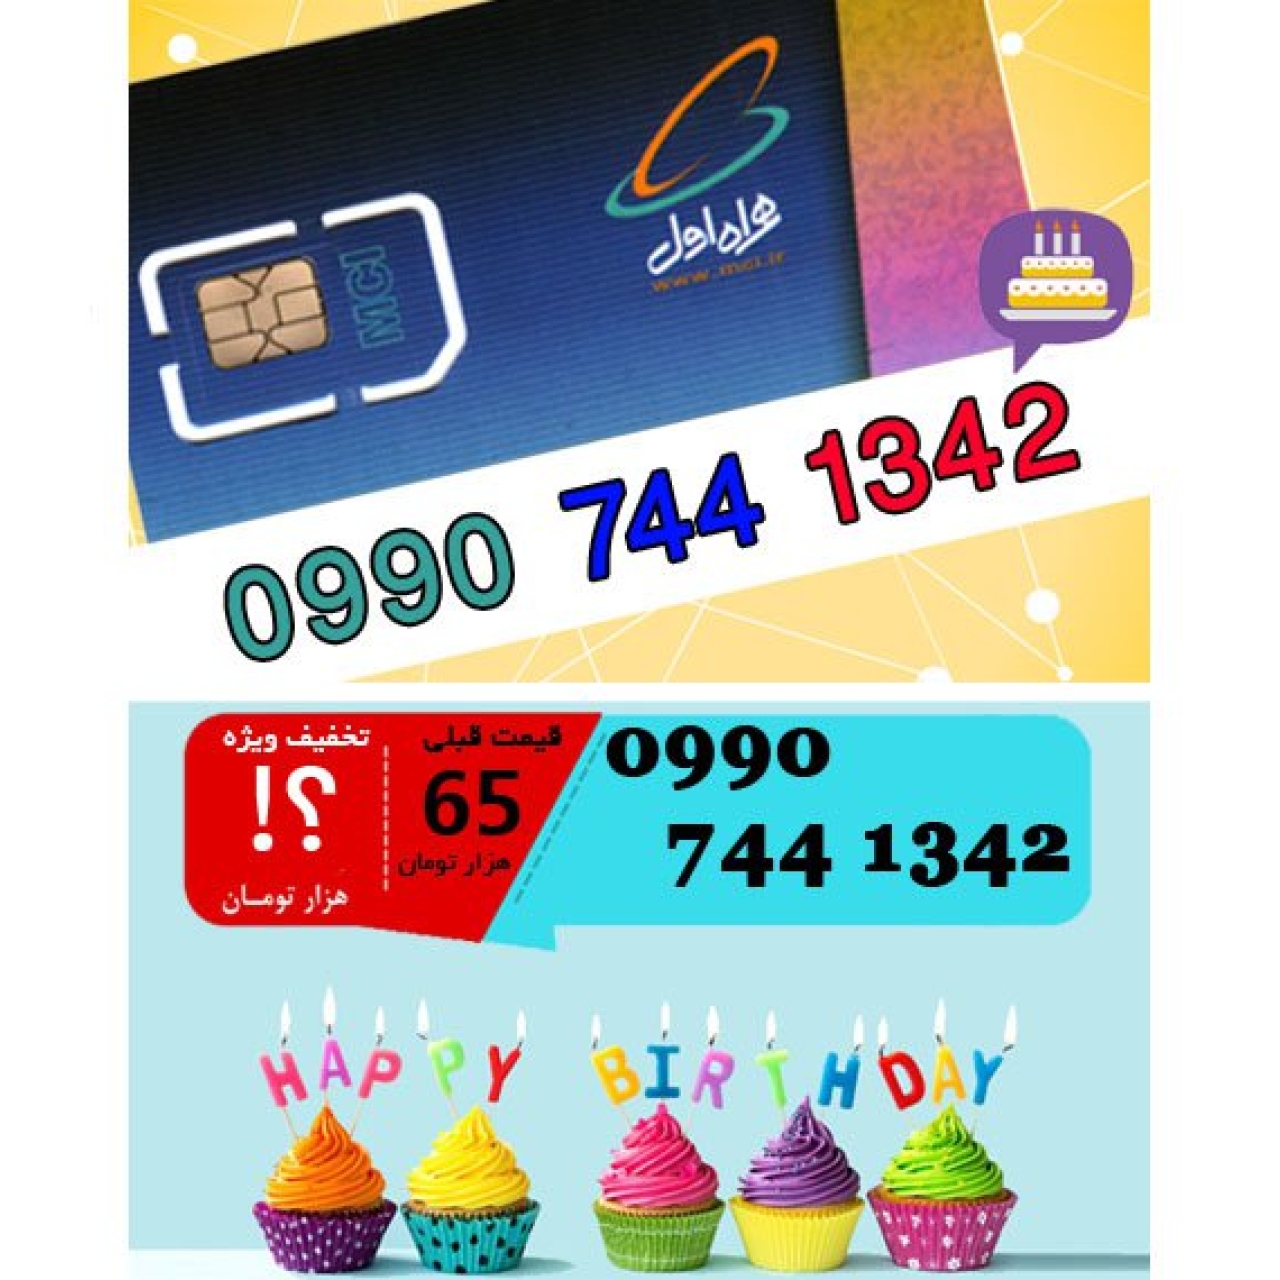 سیم کارت اعتباری همراه اول 09907441342 تاریخ تولد